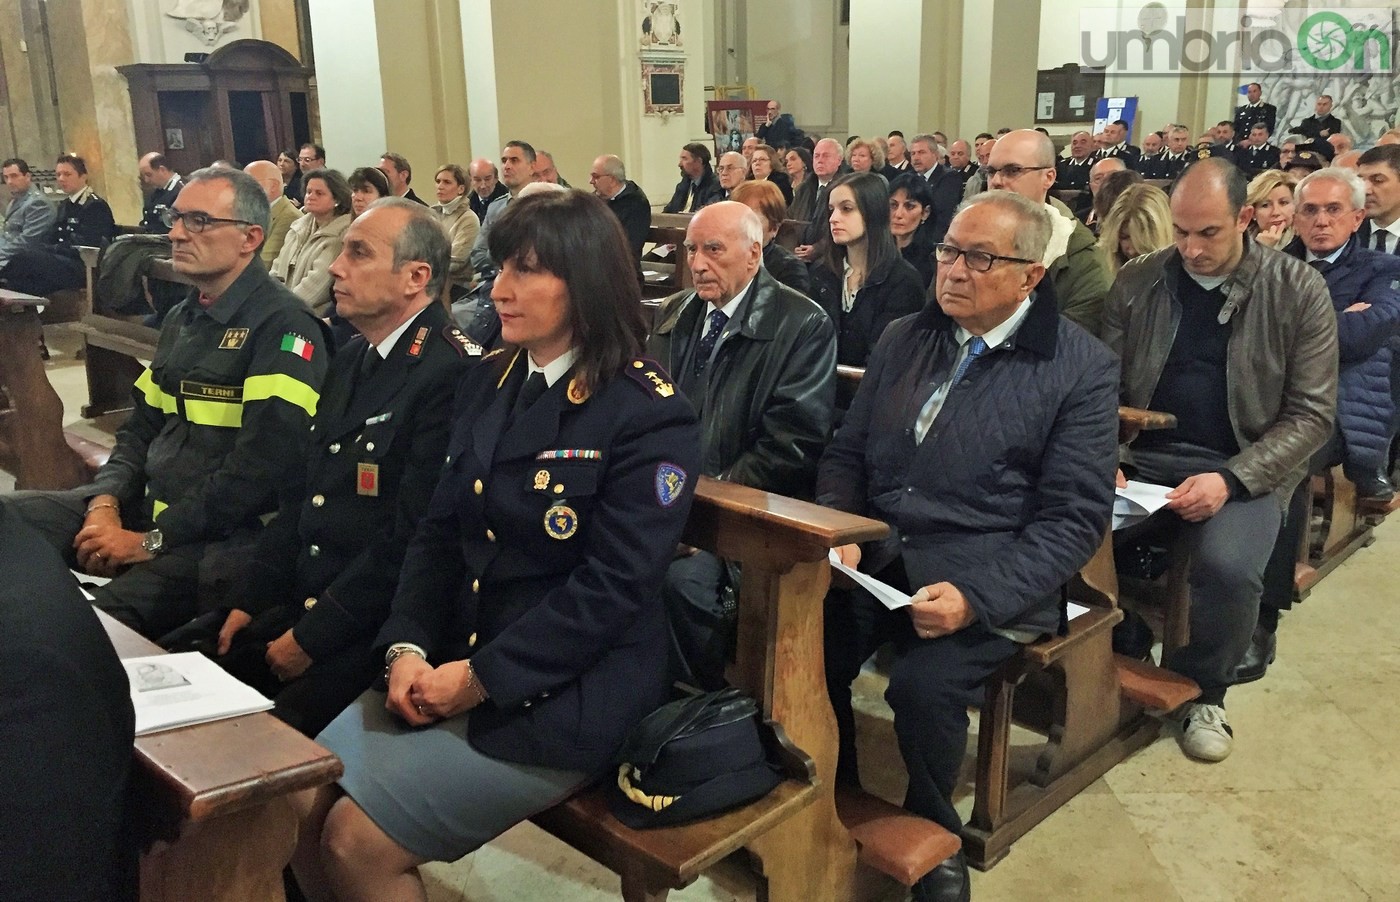 Virgo-Fidelis-carabinieri-Terni-in-cattedrale-21-novembre-2016-14